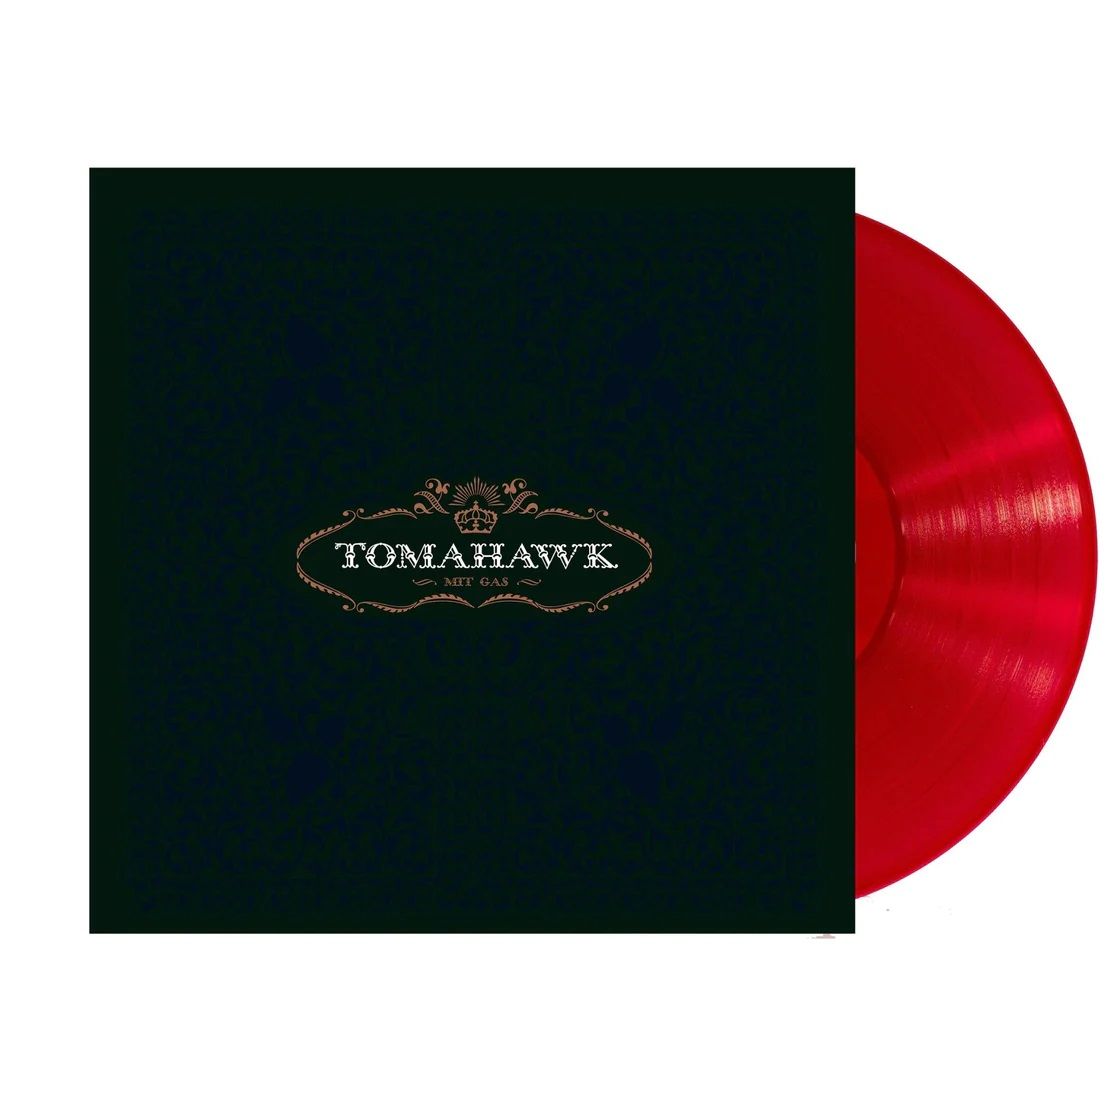 Tomahawk - Mit Gas (2023 Indie Exclusive Red vinyl reissue) - Vinyl - New